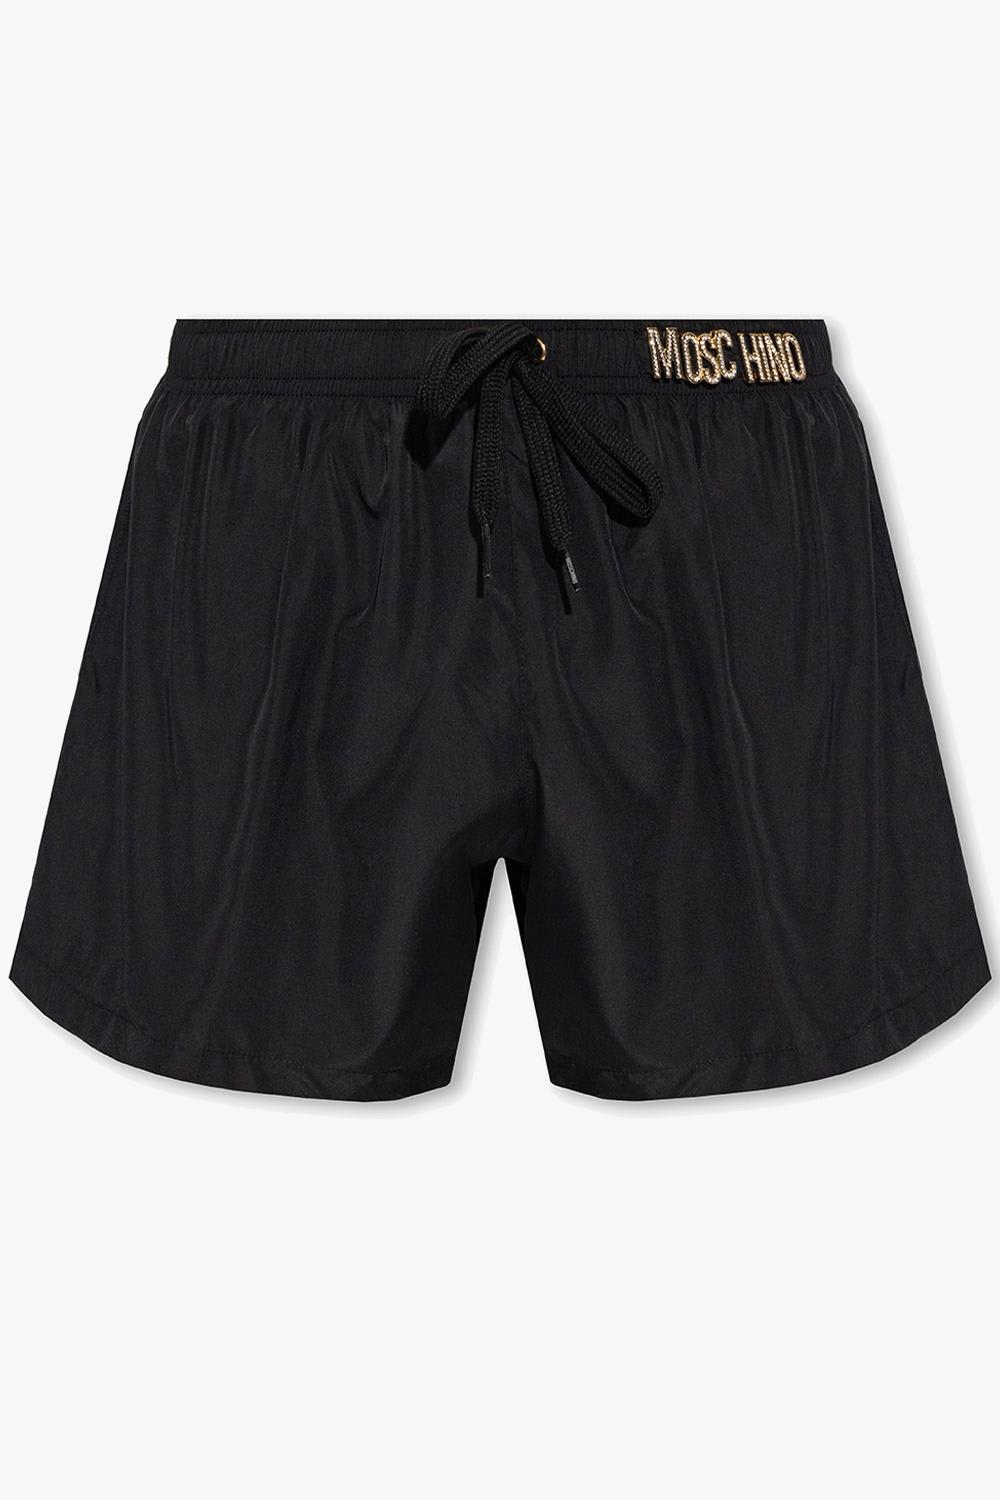 Moschino Swimming Shorts